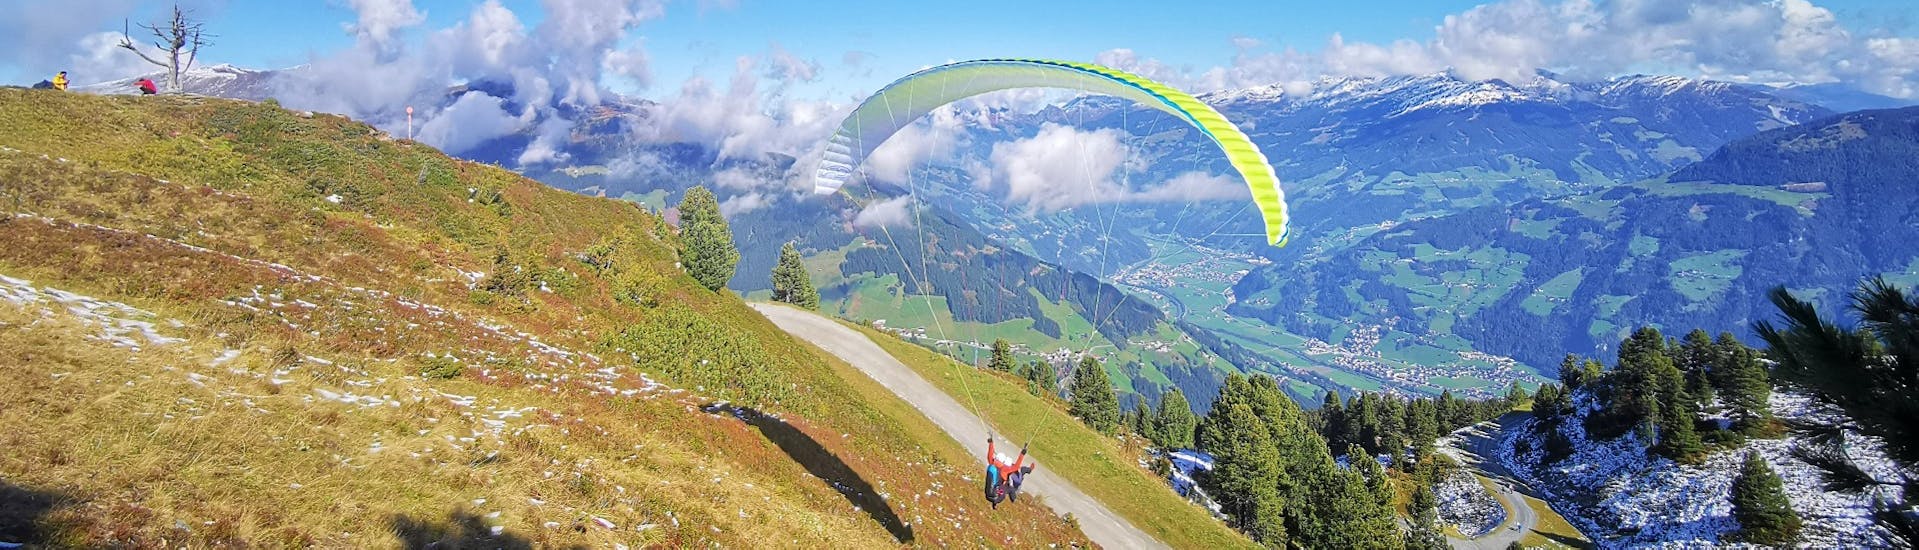 De piloot van AIRflow Tandem-paragliding Zillertal vertrekt met de klant voor zijn geboekte premium tandem-paraglidingvlucht in een prachtig zomers landschap.